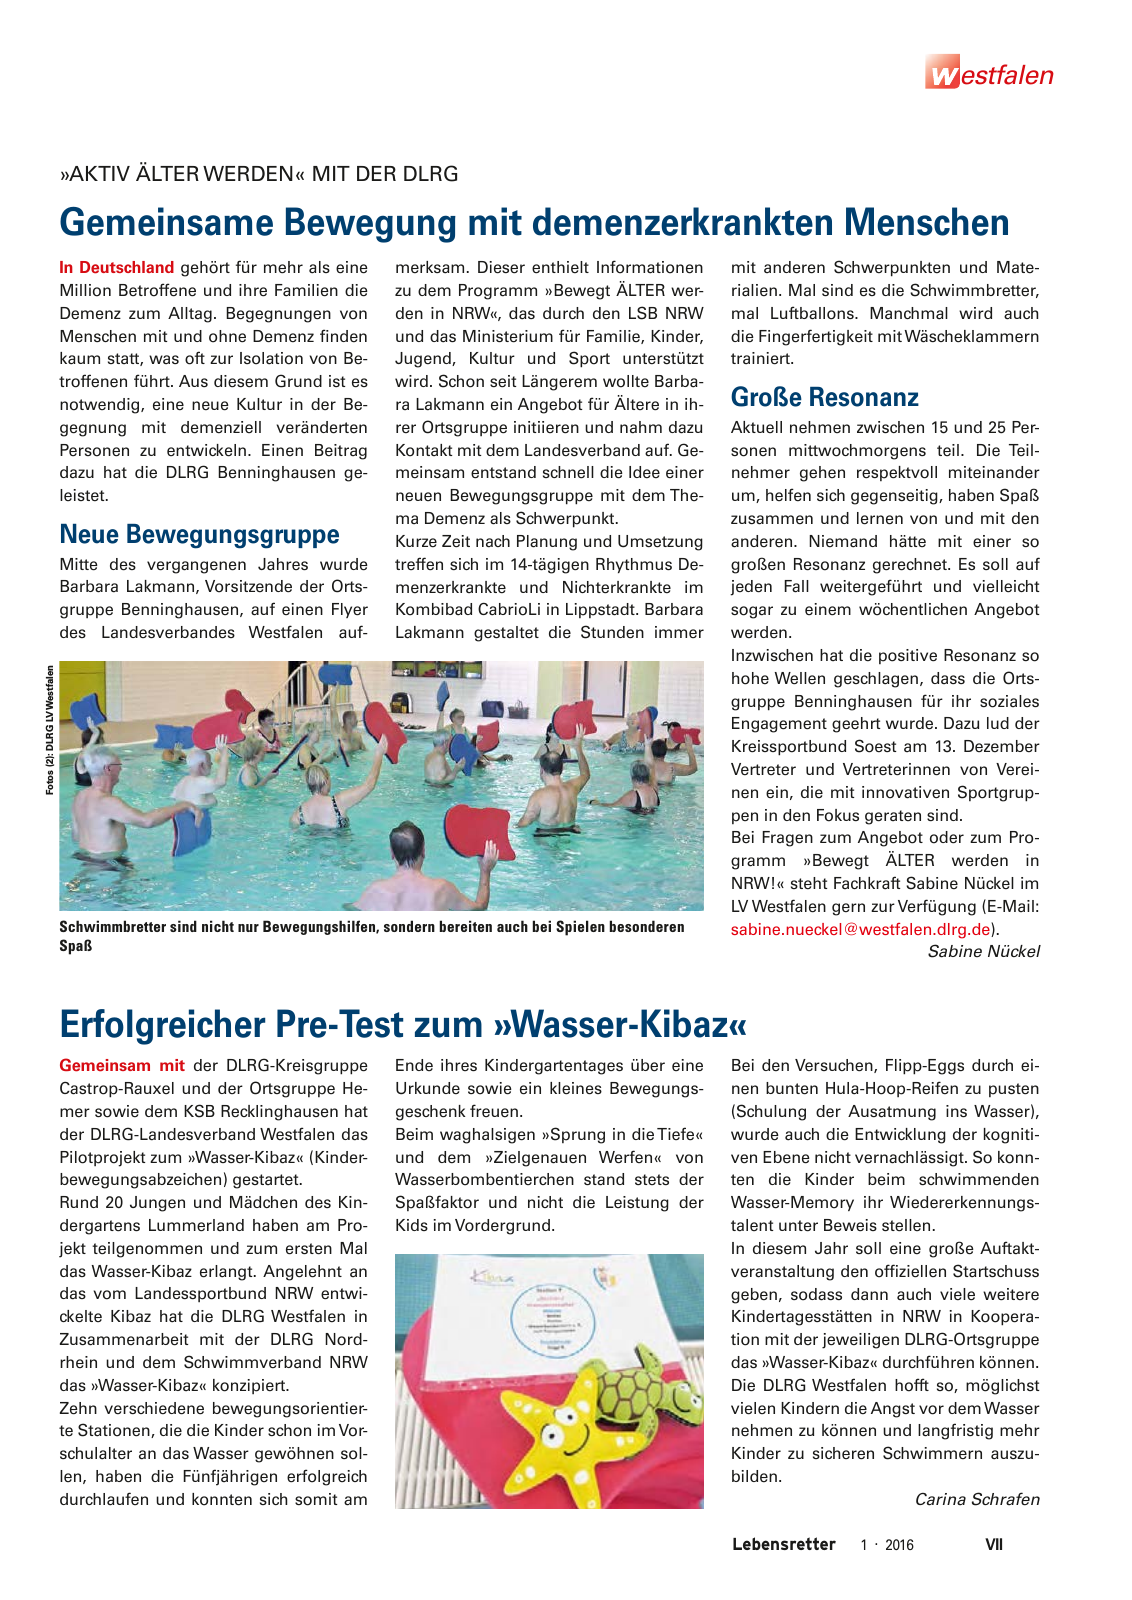 Vorschau Lebensretter 1/2016 - Regionalausgabe Westfalen Seite 9